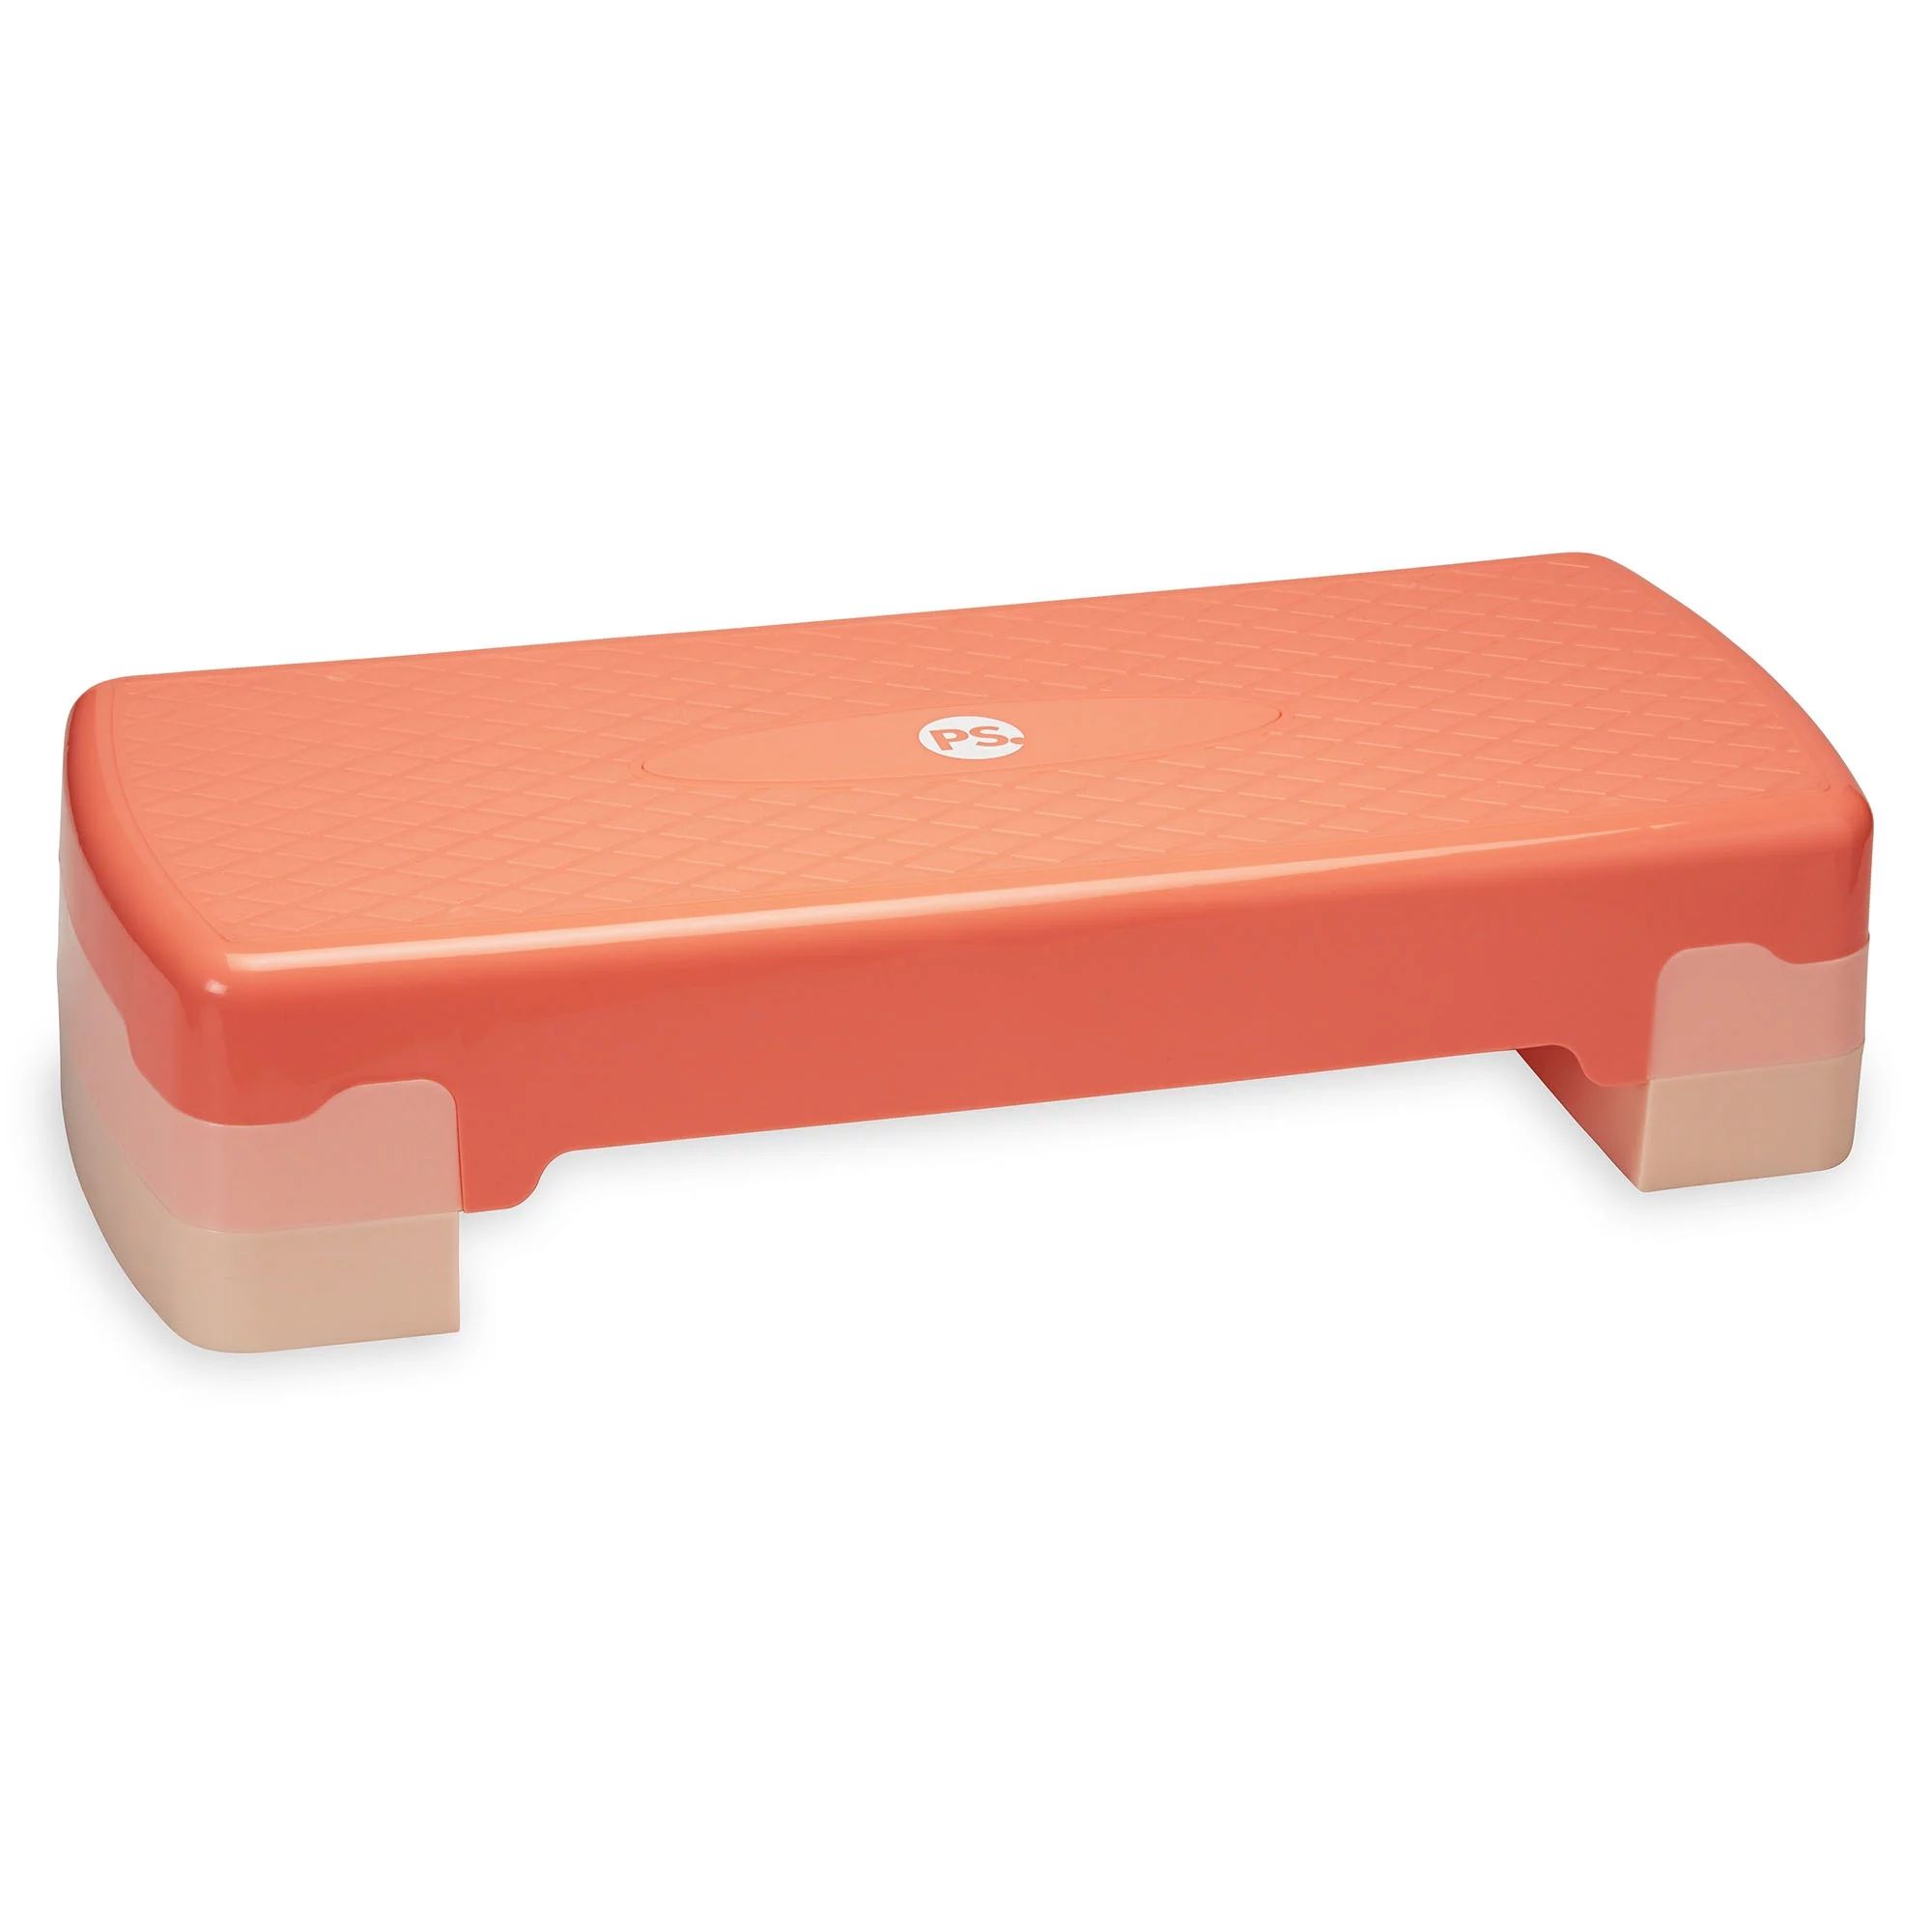 POPSUGAR Aerobic Step Deck, Adjustable Height & Non Slip Surface, Coral | Walmart (US)